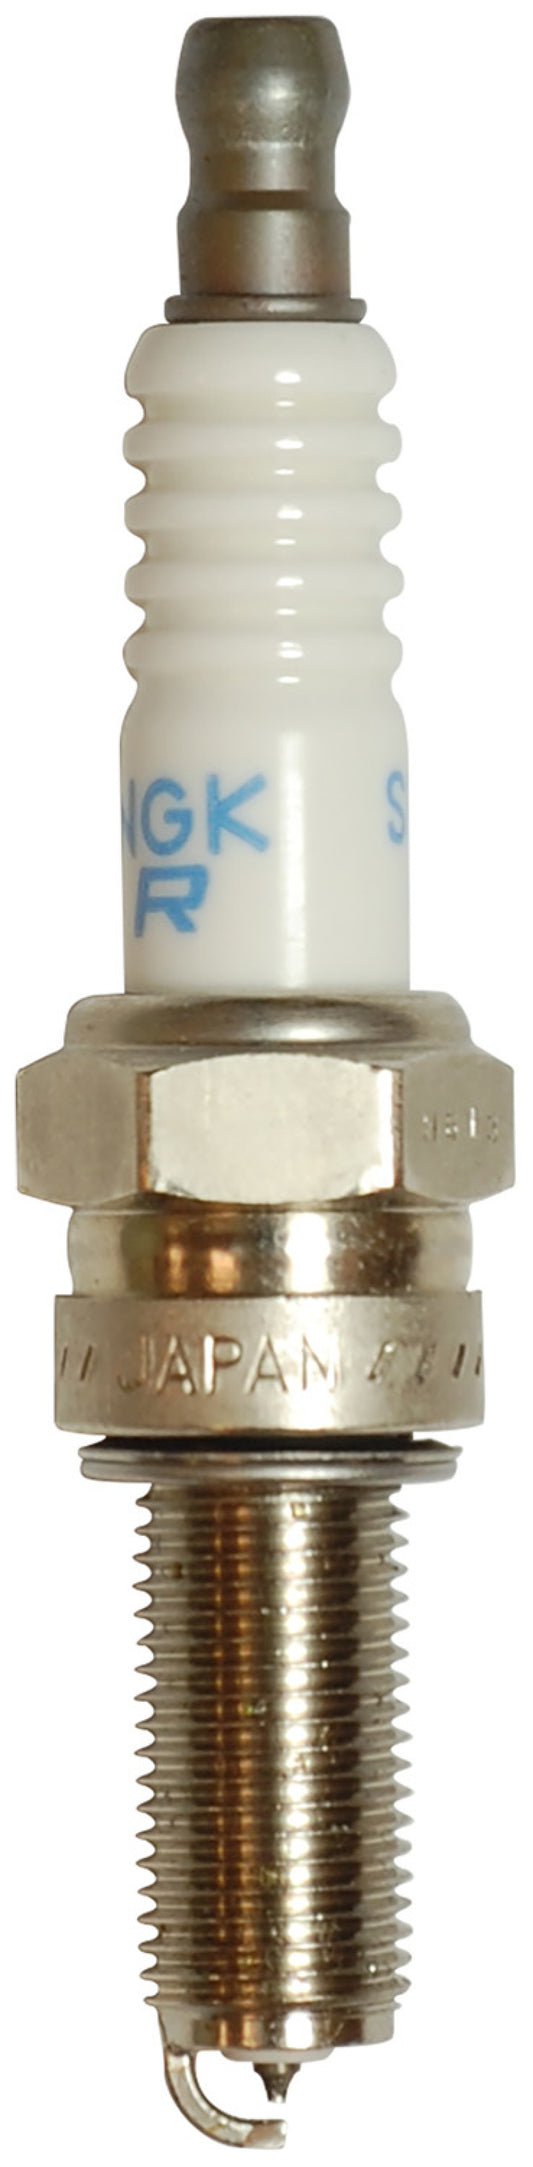 NGK Laser Platinum Spark Plug Box of 4 (SPMR8A6HDG)